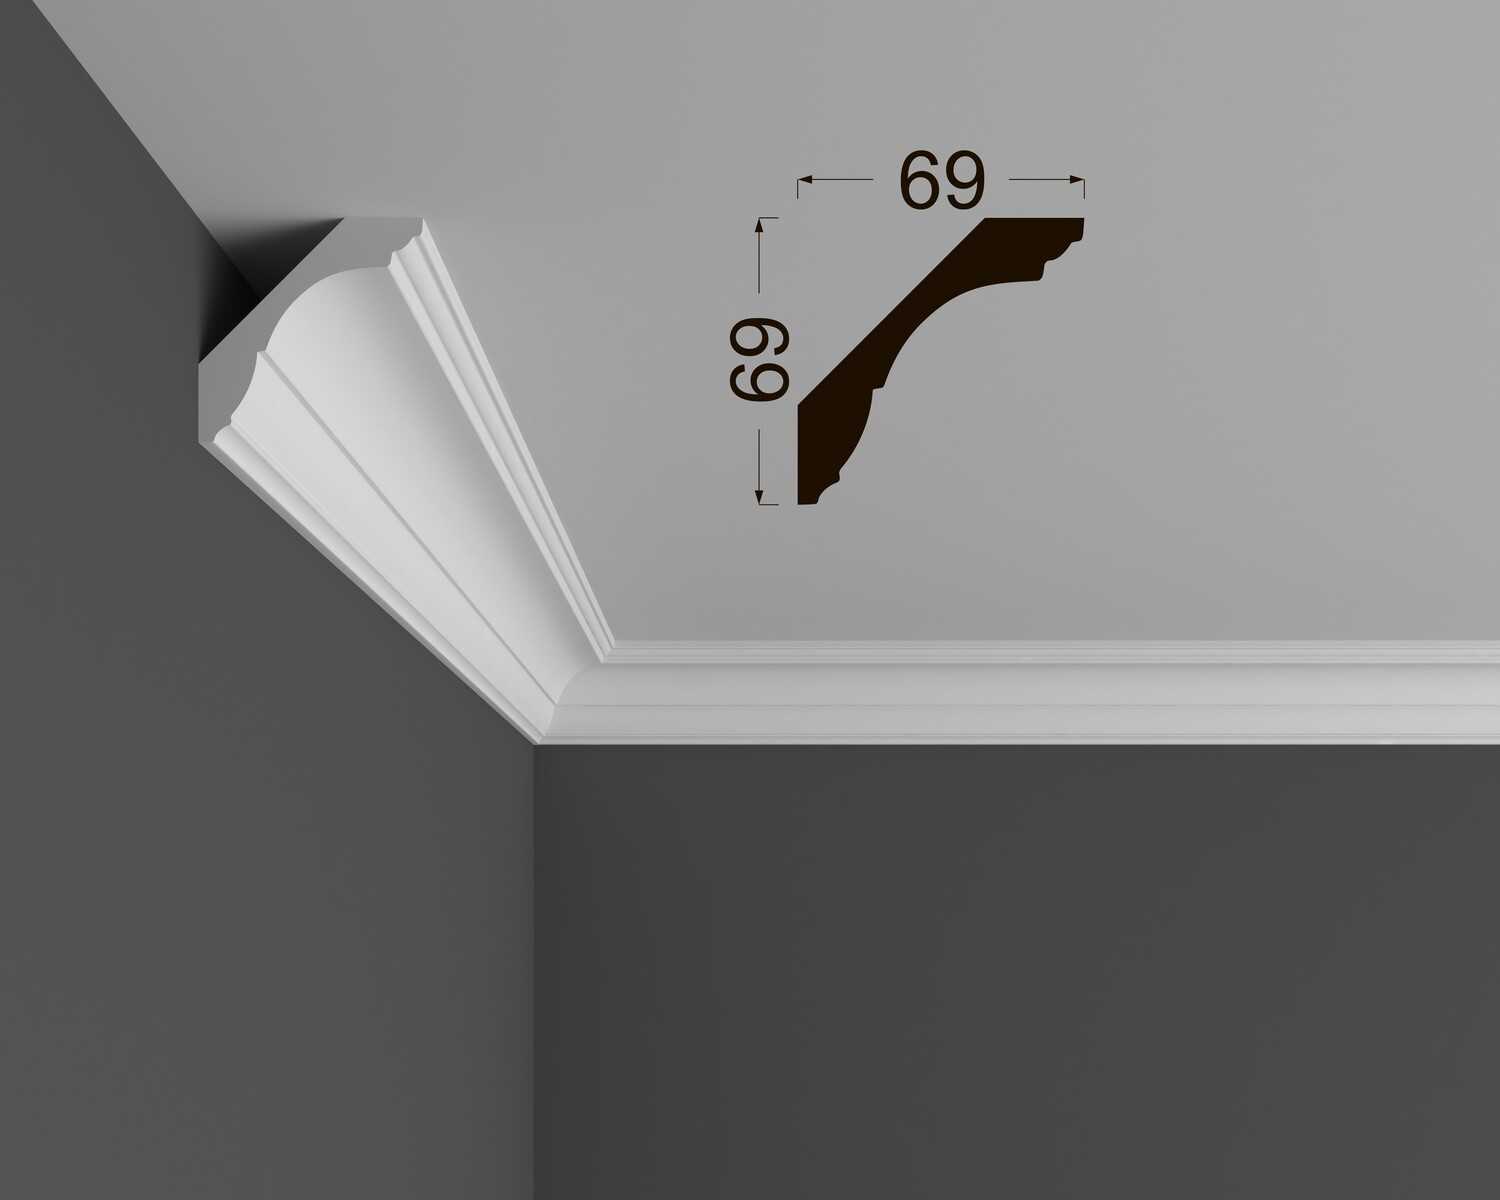 Как повесить грушу на потолок, какое крепление использовать, фото и видео инструкции — внимательный взгляд на вопрос